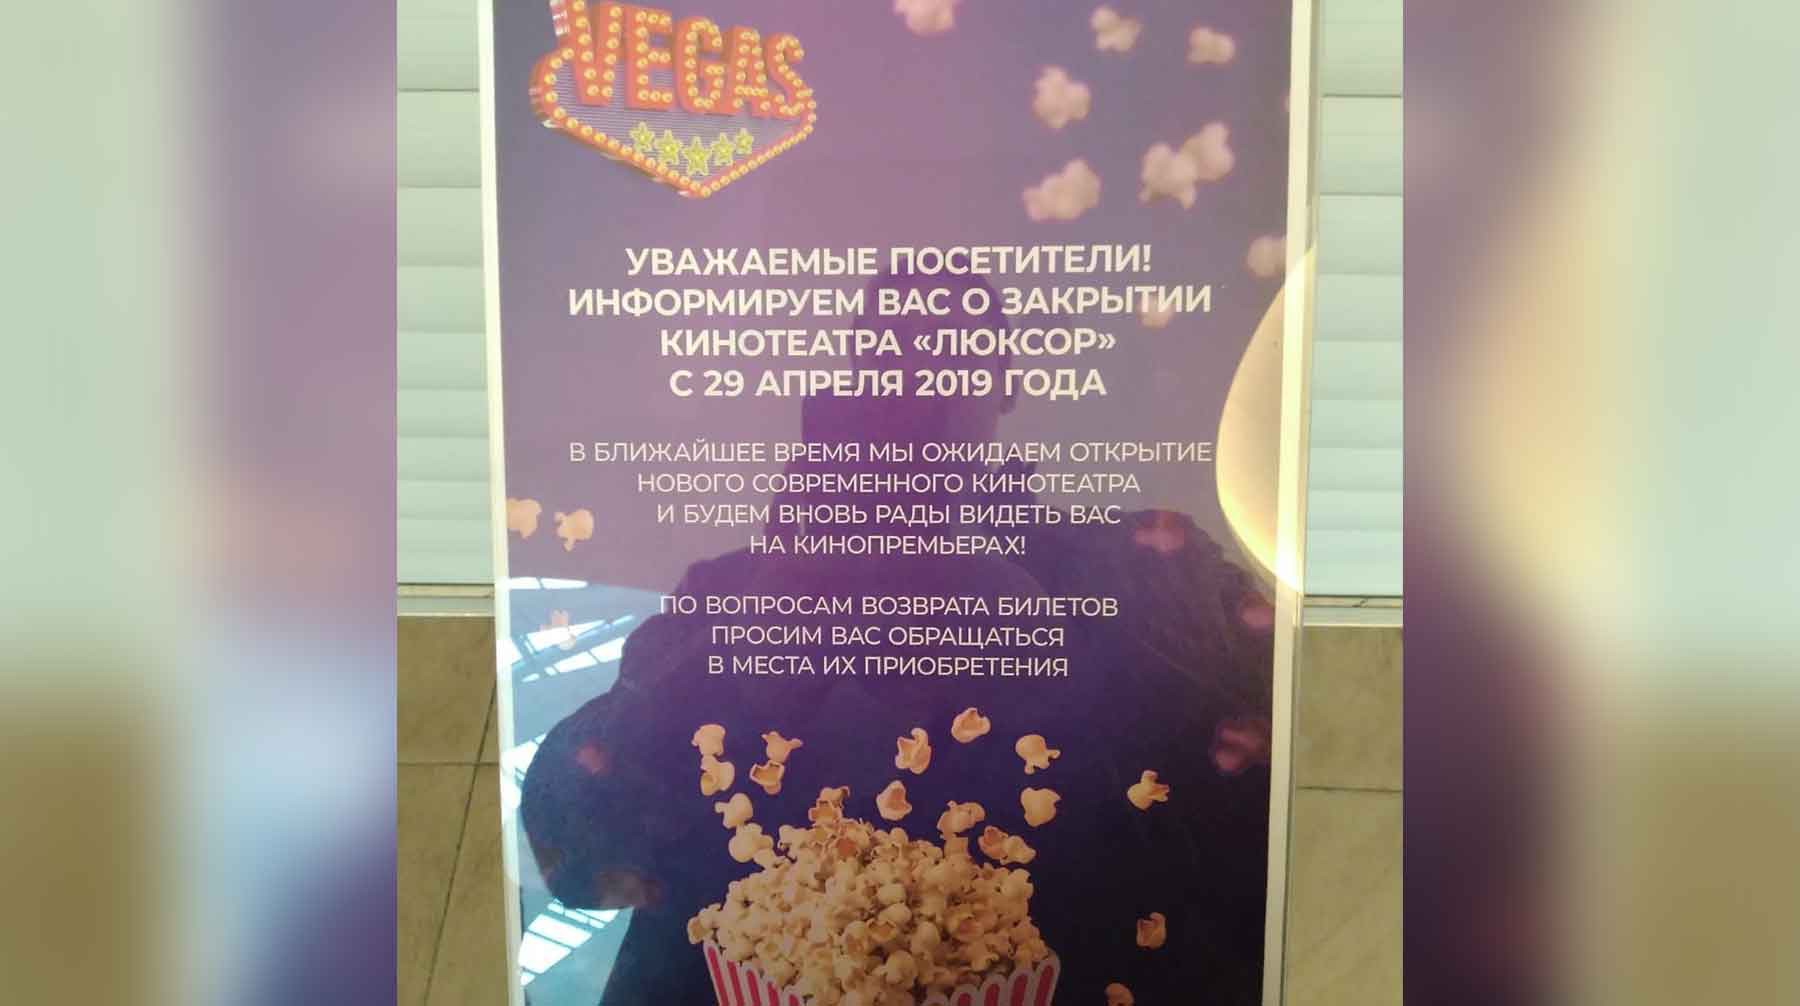 Dailystorm - Московский кинотеатр «Люксор» закрылся, распродав билеты на «Мстителей»